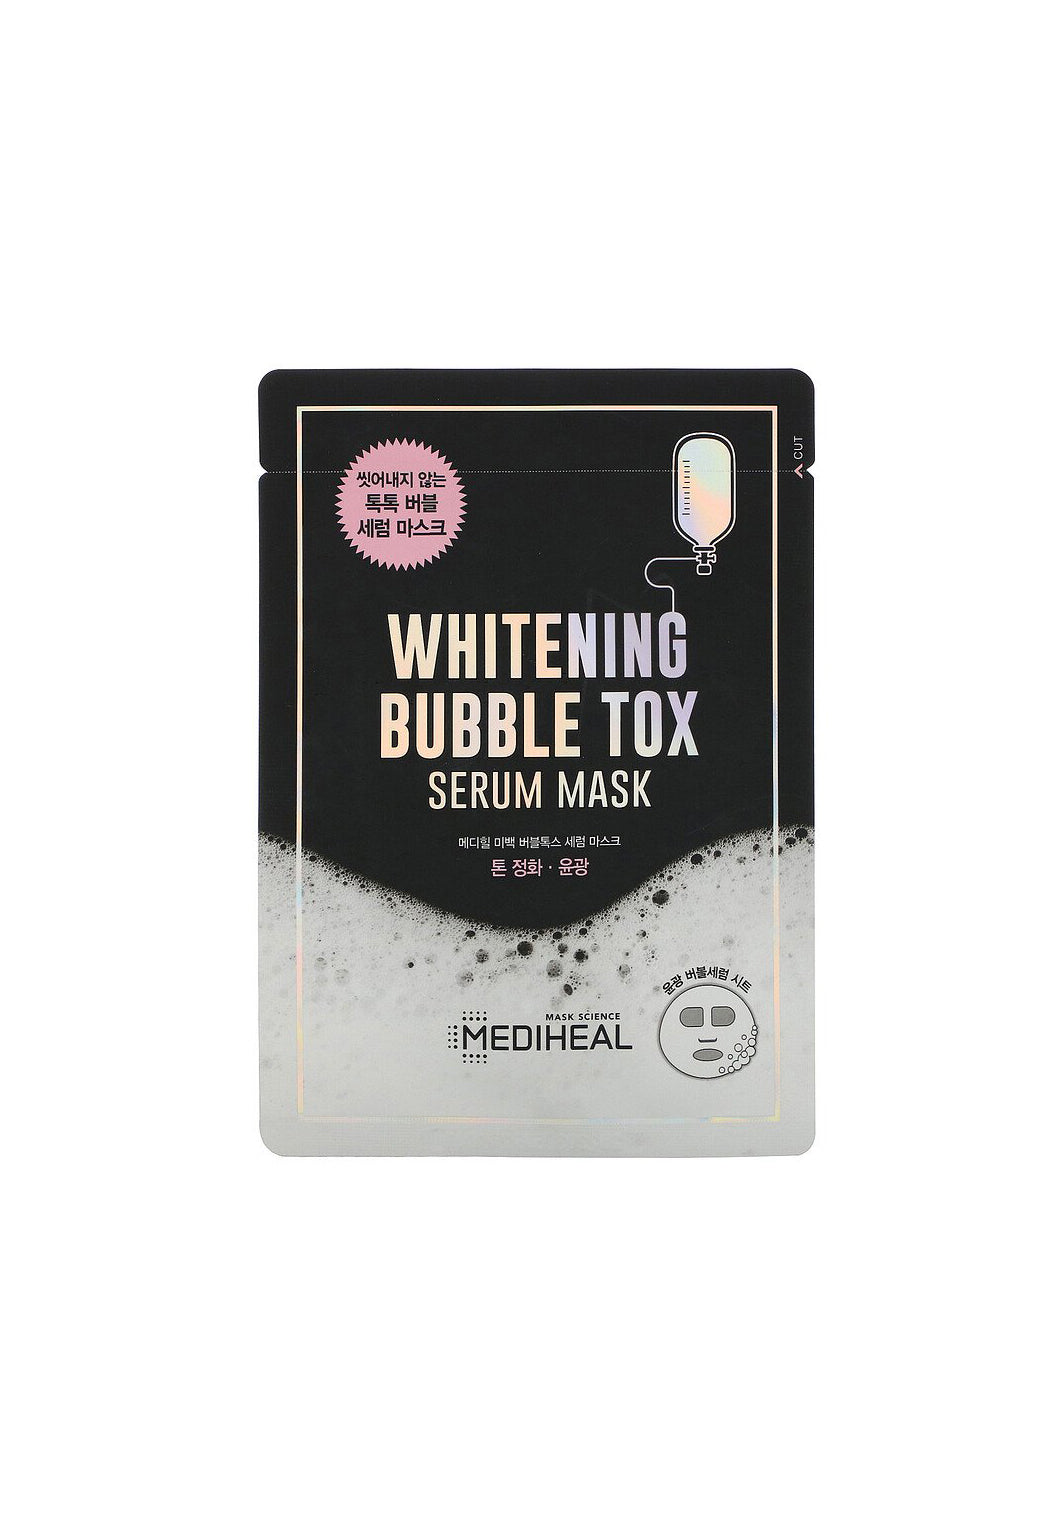 Whitening Bubble Tox Serum Mask, 1 Sheet, 21 ml